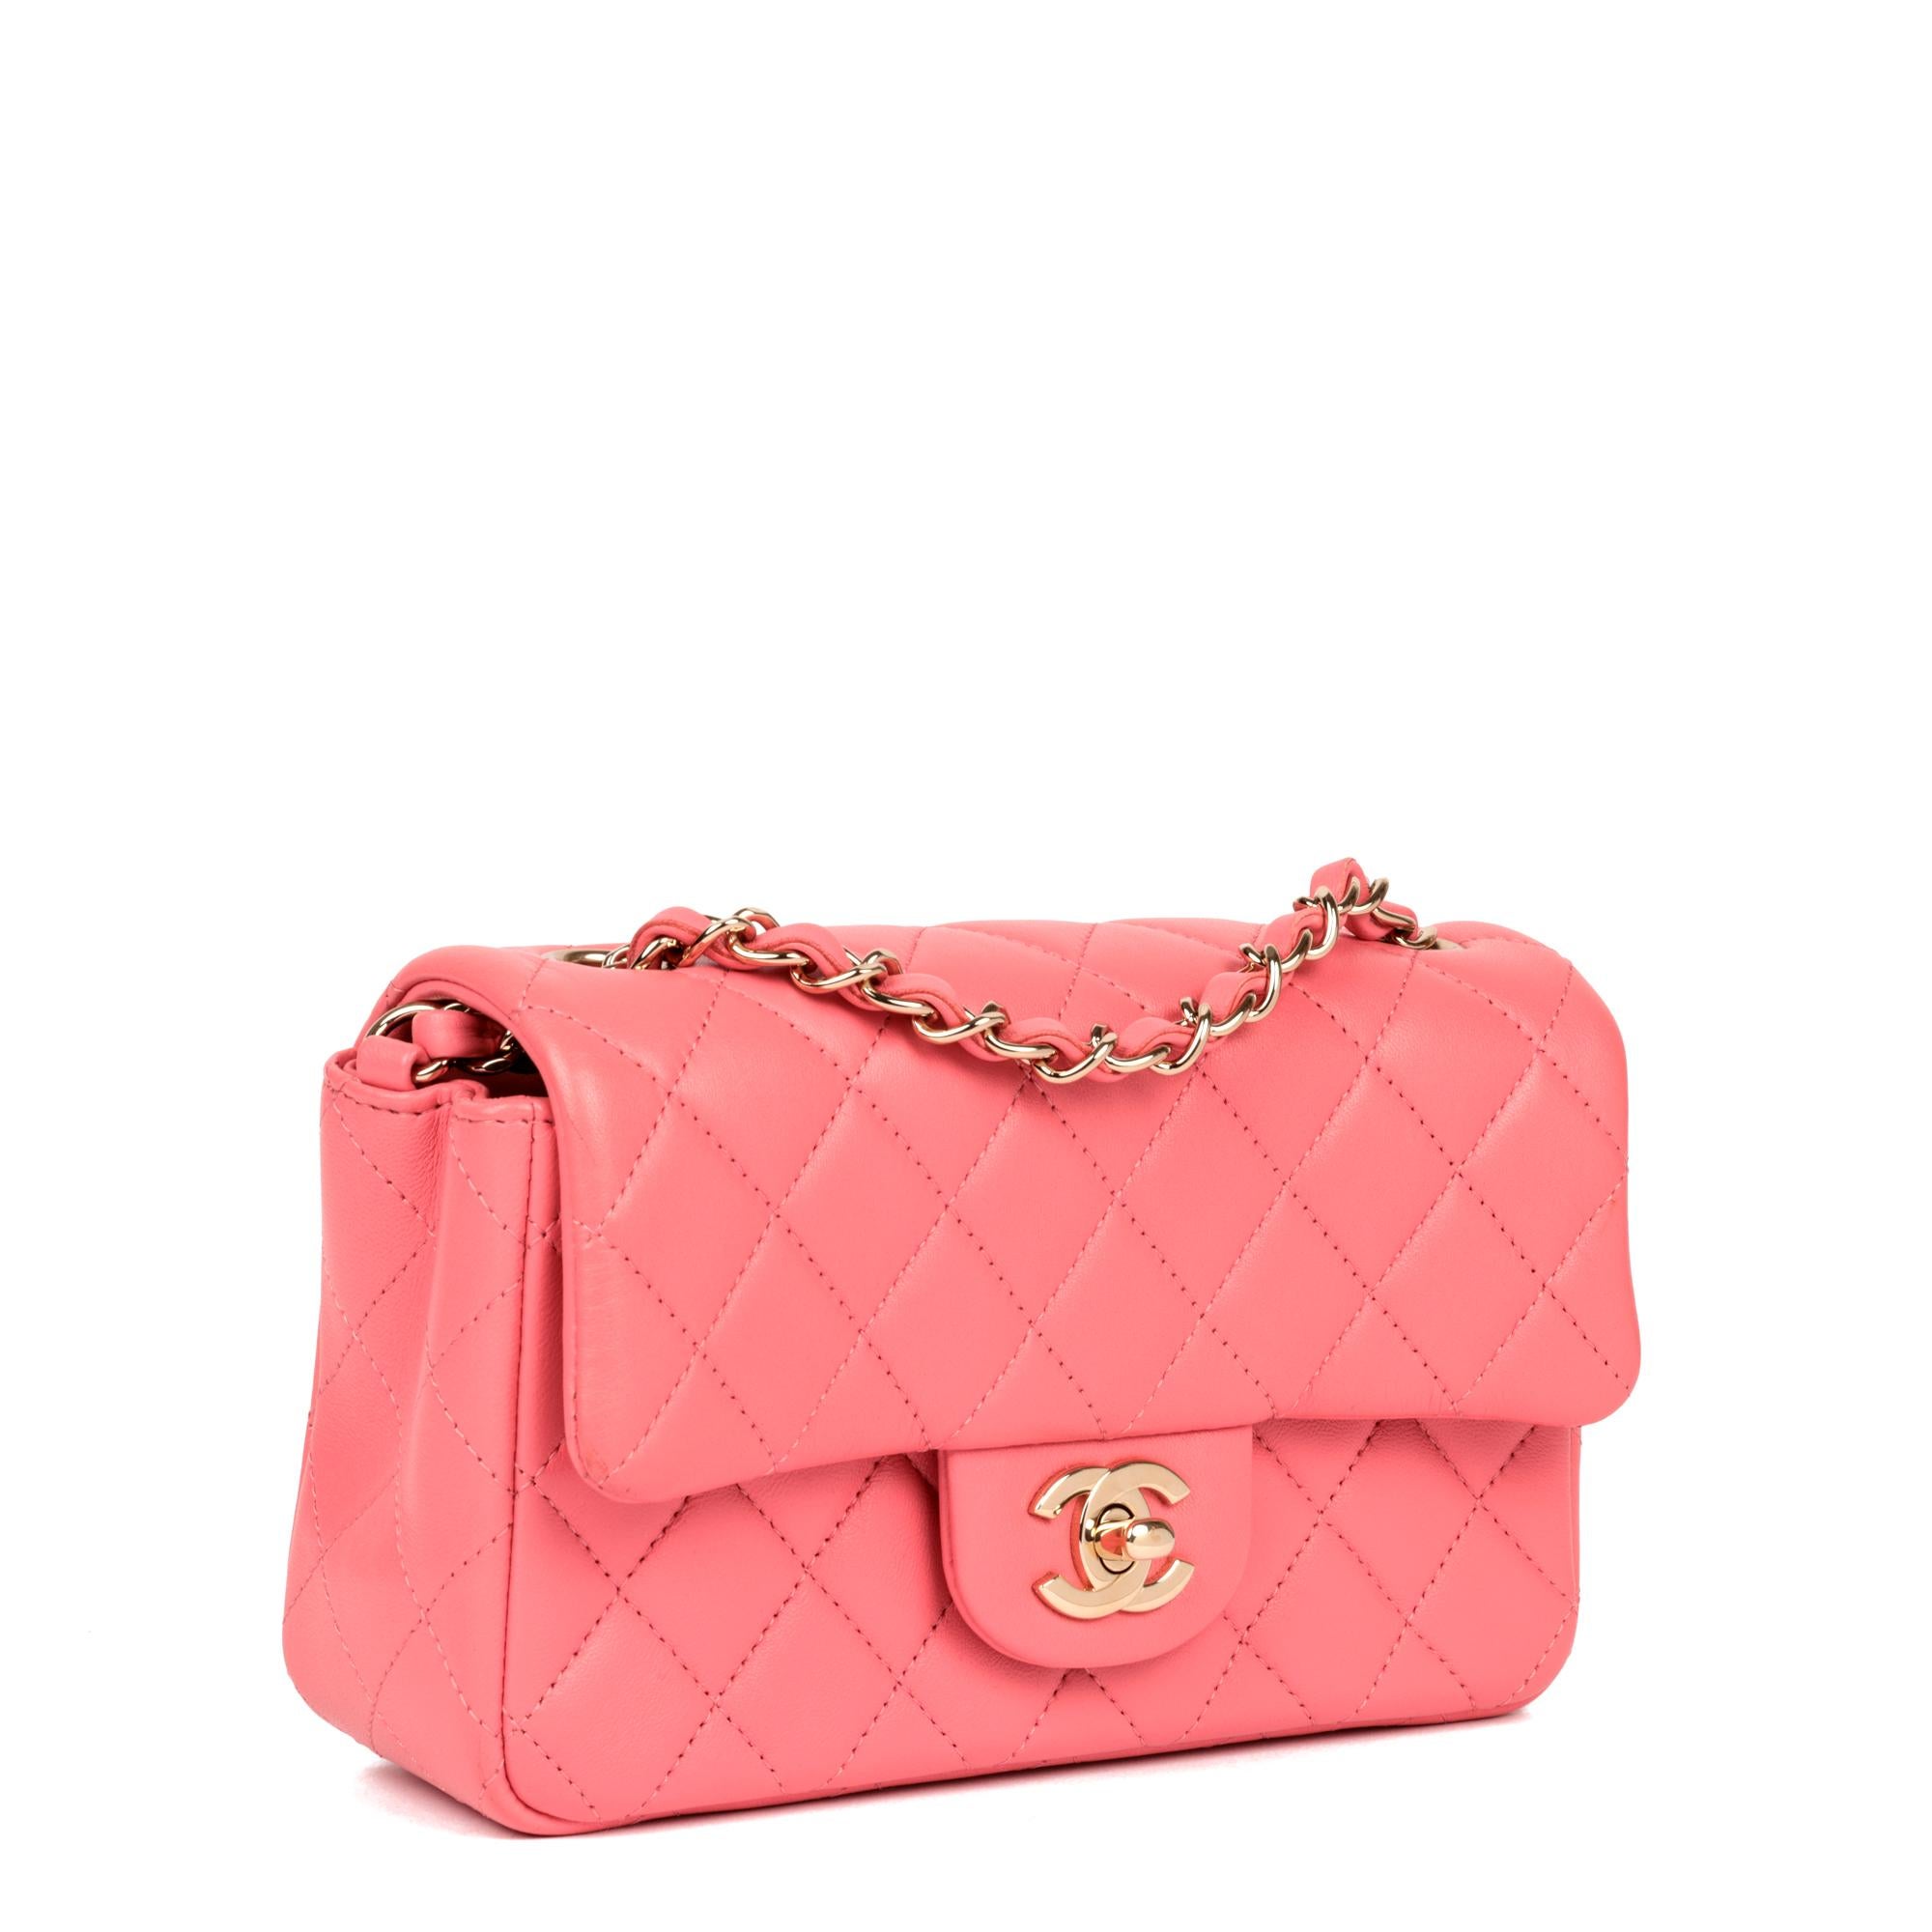 Chanel - Mini sac à rabat rectangulaire en cuir d'agneau matelassé rose

NOTES D'ÉTAT
L'extérieur est dans un état exceptionnel et ne présente aucune trace d'utilisation.
L'intérieur est dans un état exceptionnel et ne présente aucune trace